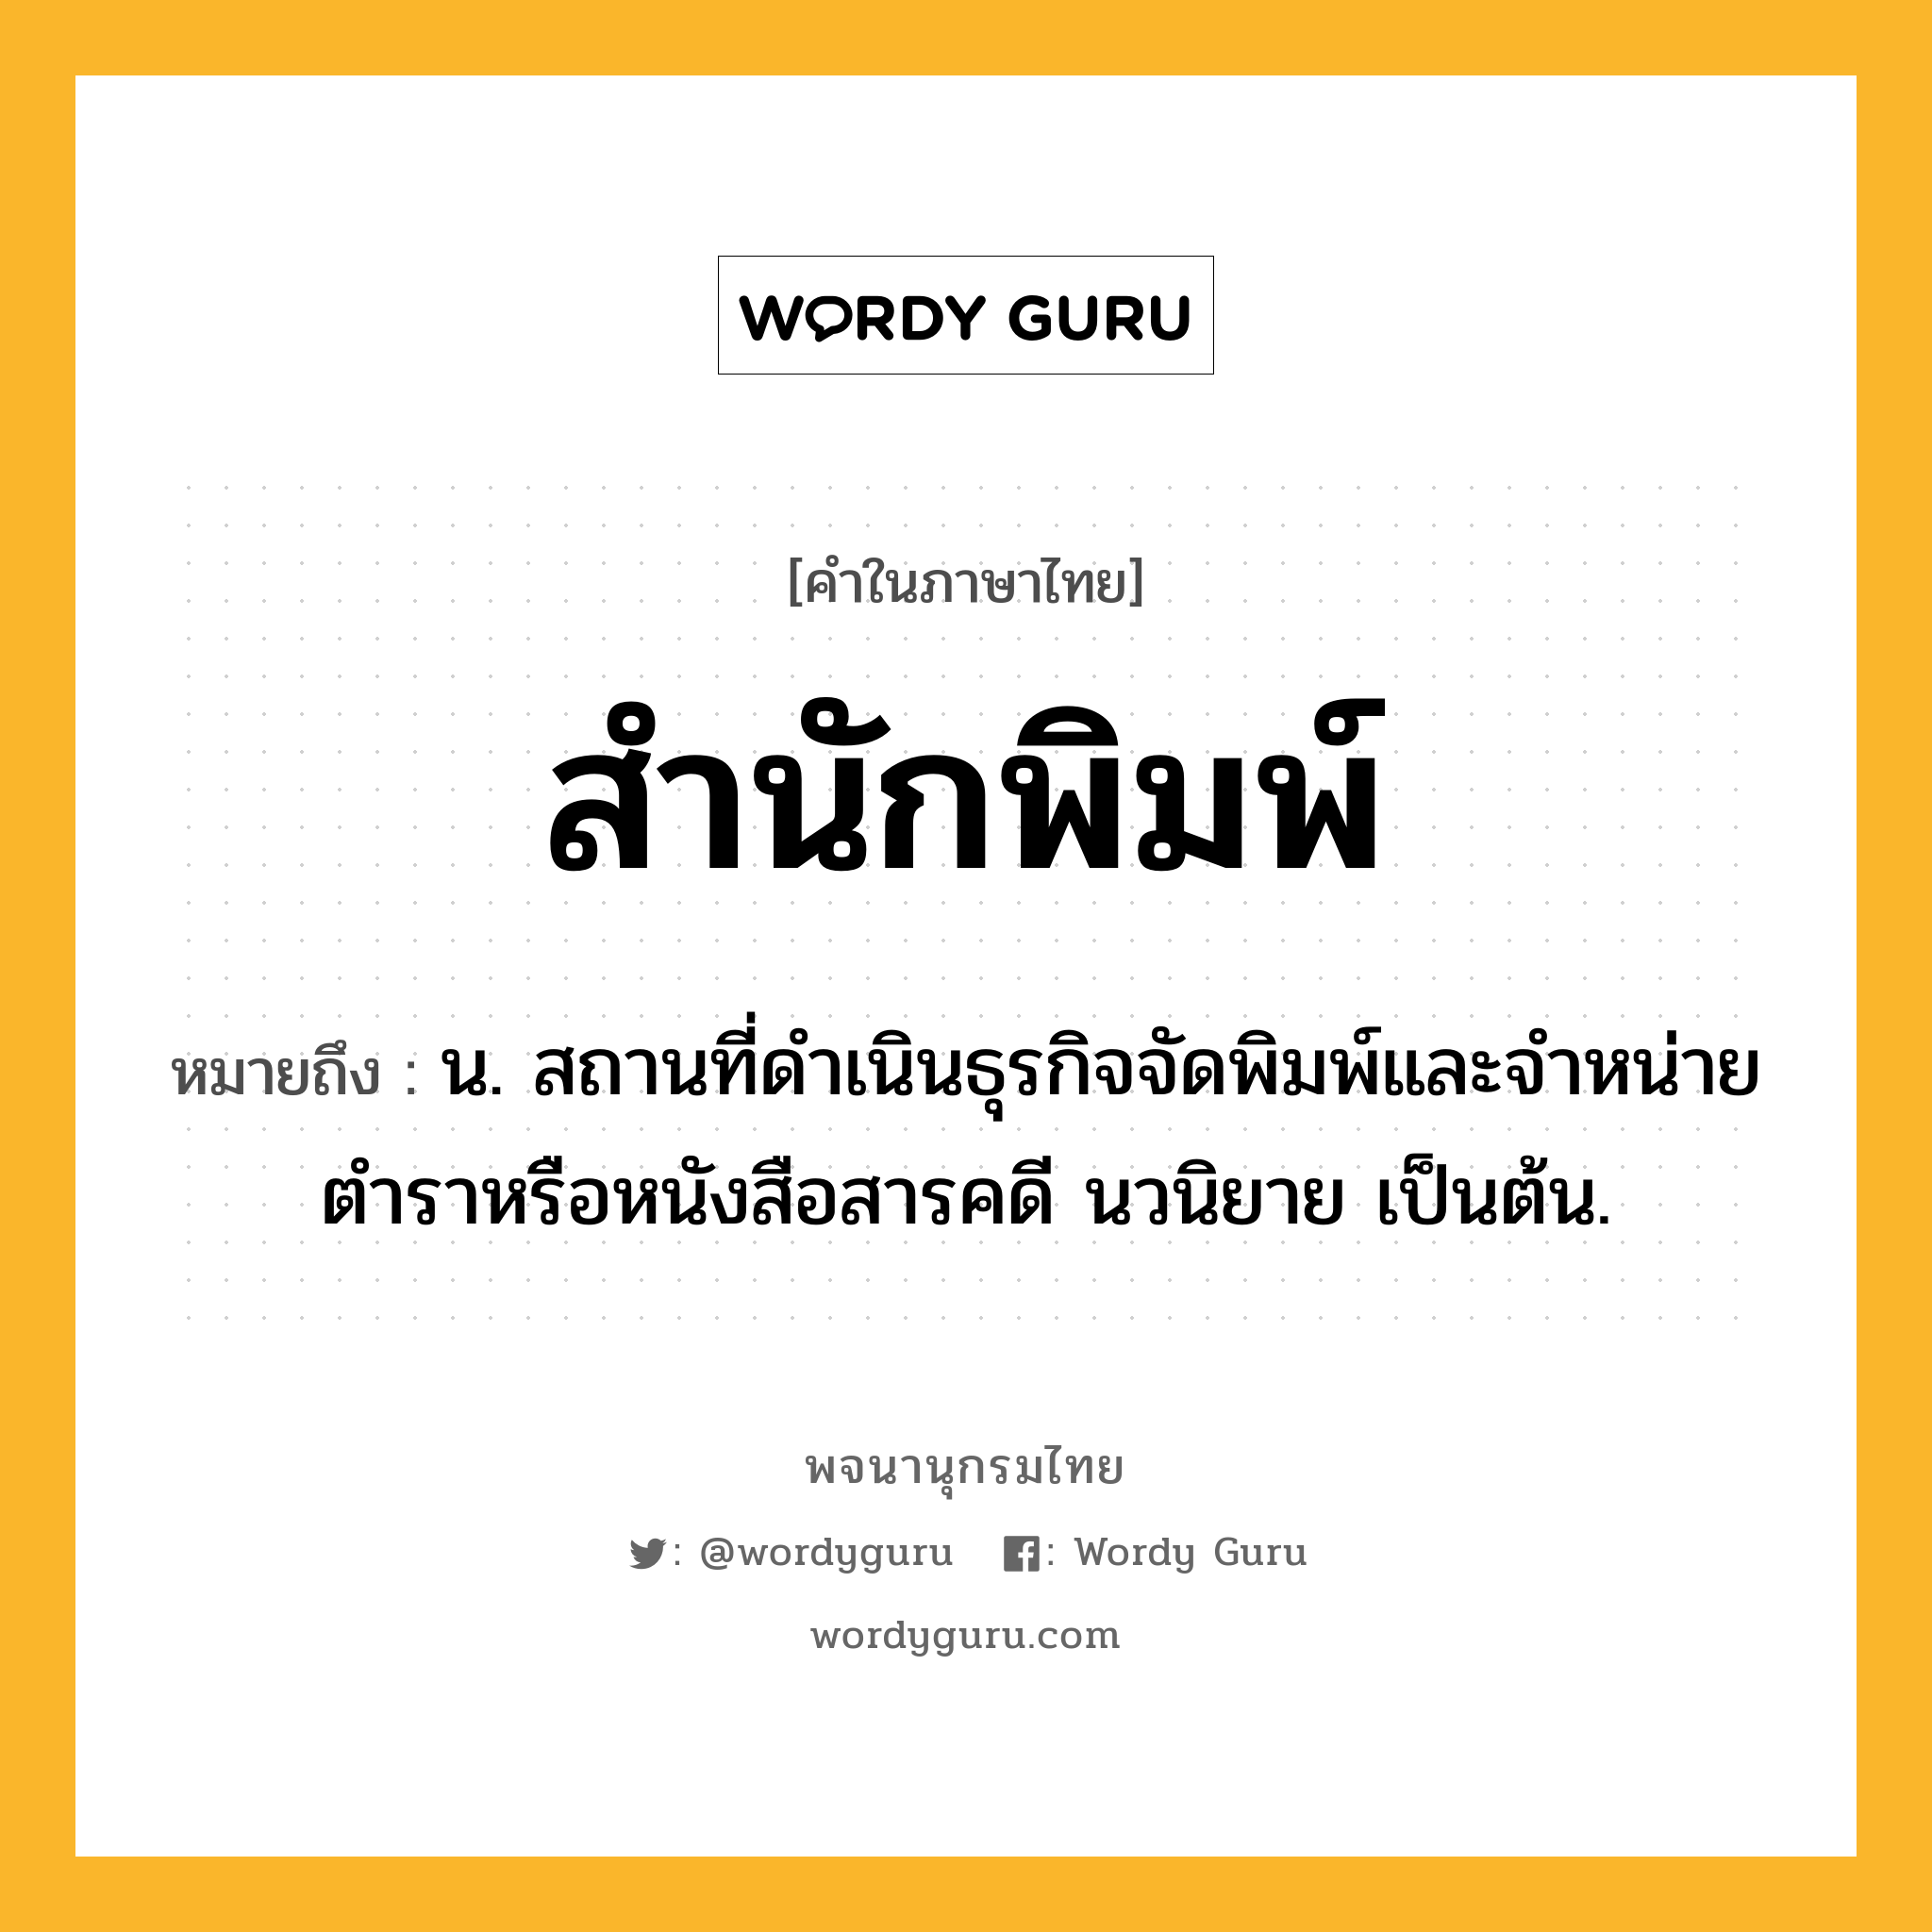 สำนักพิมพ์ ความหมาย หมายถึงอะไร?, คำในภาษาไทย สำนักพิมพ์ หมายถึง น. สถานที่ดำเนินธุรกิจจัดพิมพ์และจำหน่ายตำราหรือหนังสือสารคดี นวนิยาย เป็นต้น.